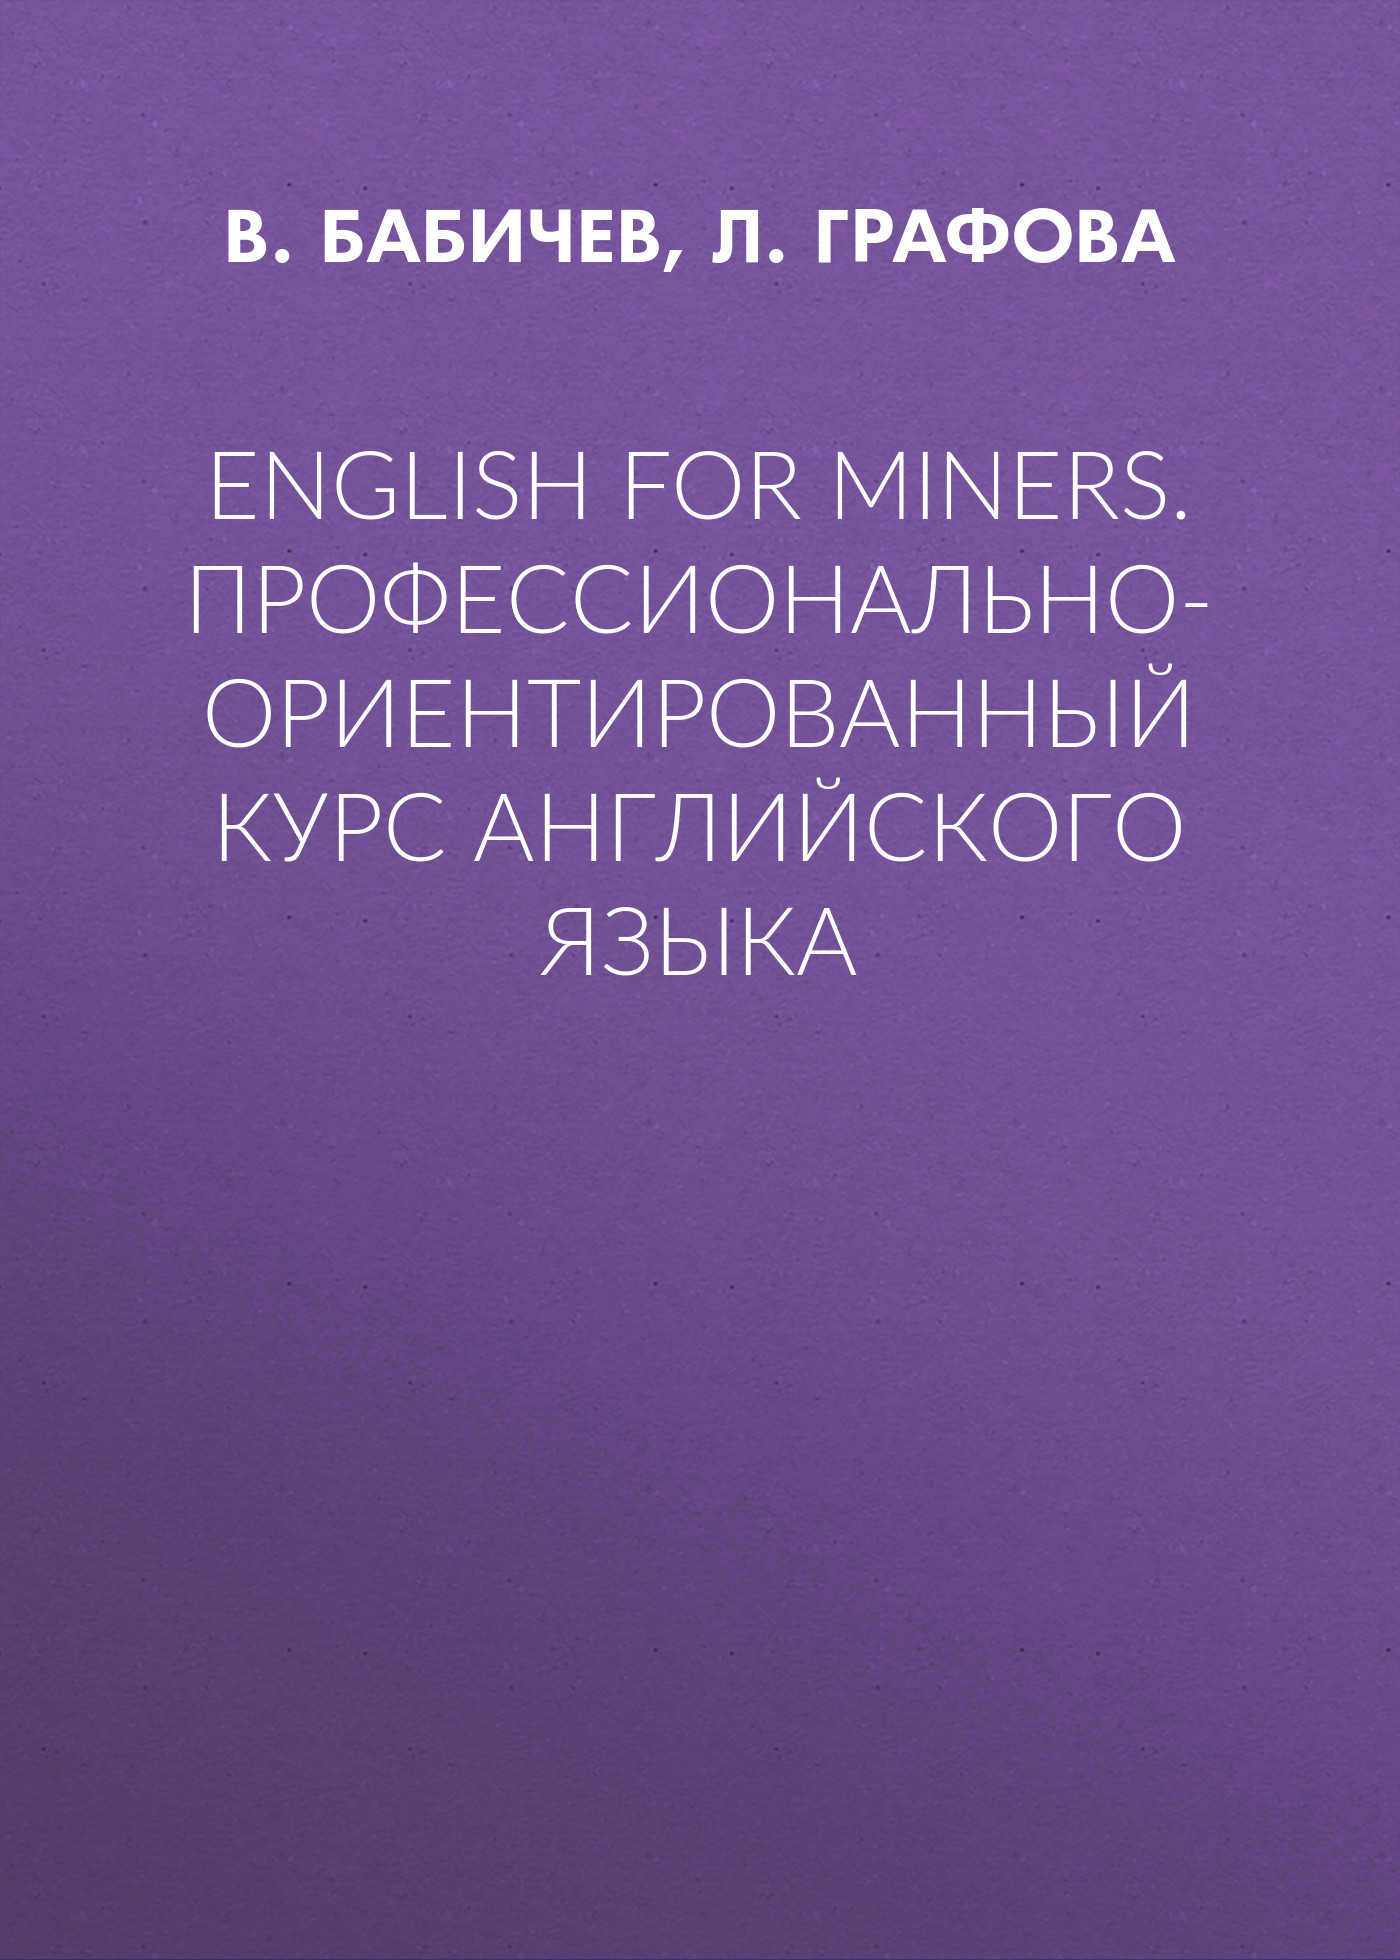 English for Miners.Профессионально-ориентированный курс английского языка